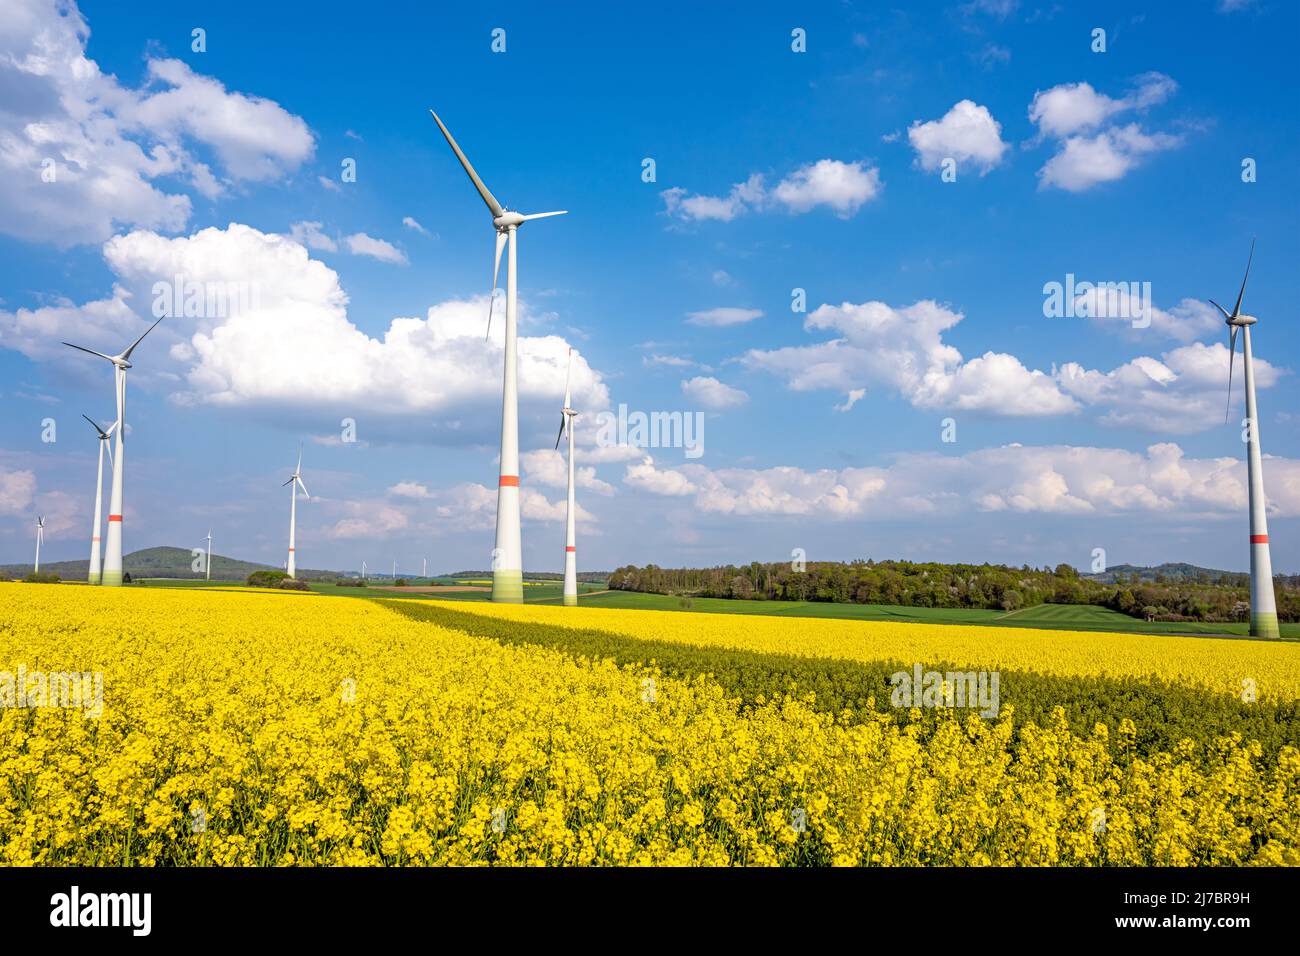 Wind turbines in a blooming rape field seen in Germany Stock Photo